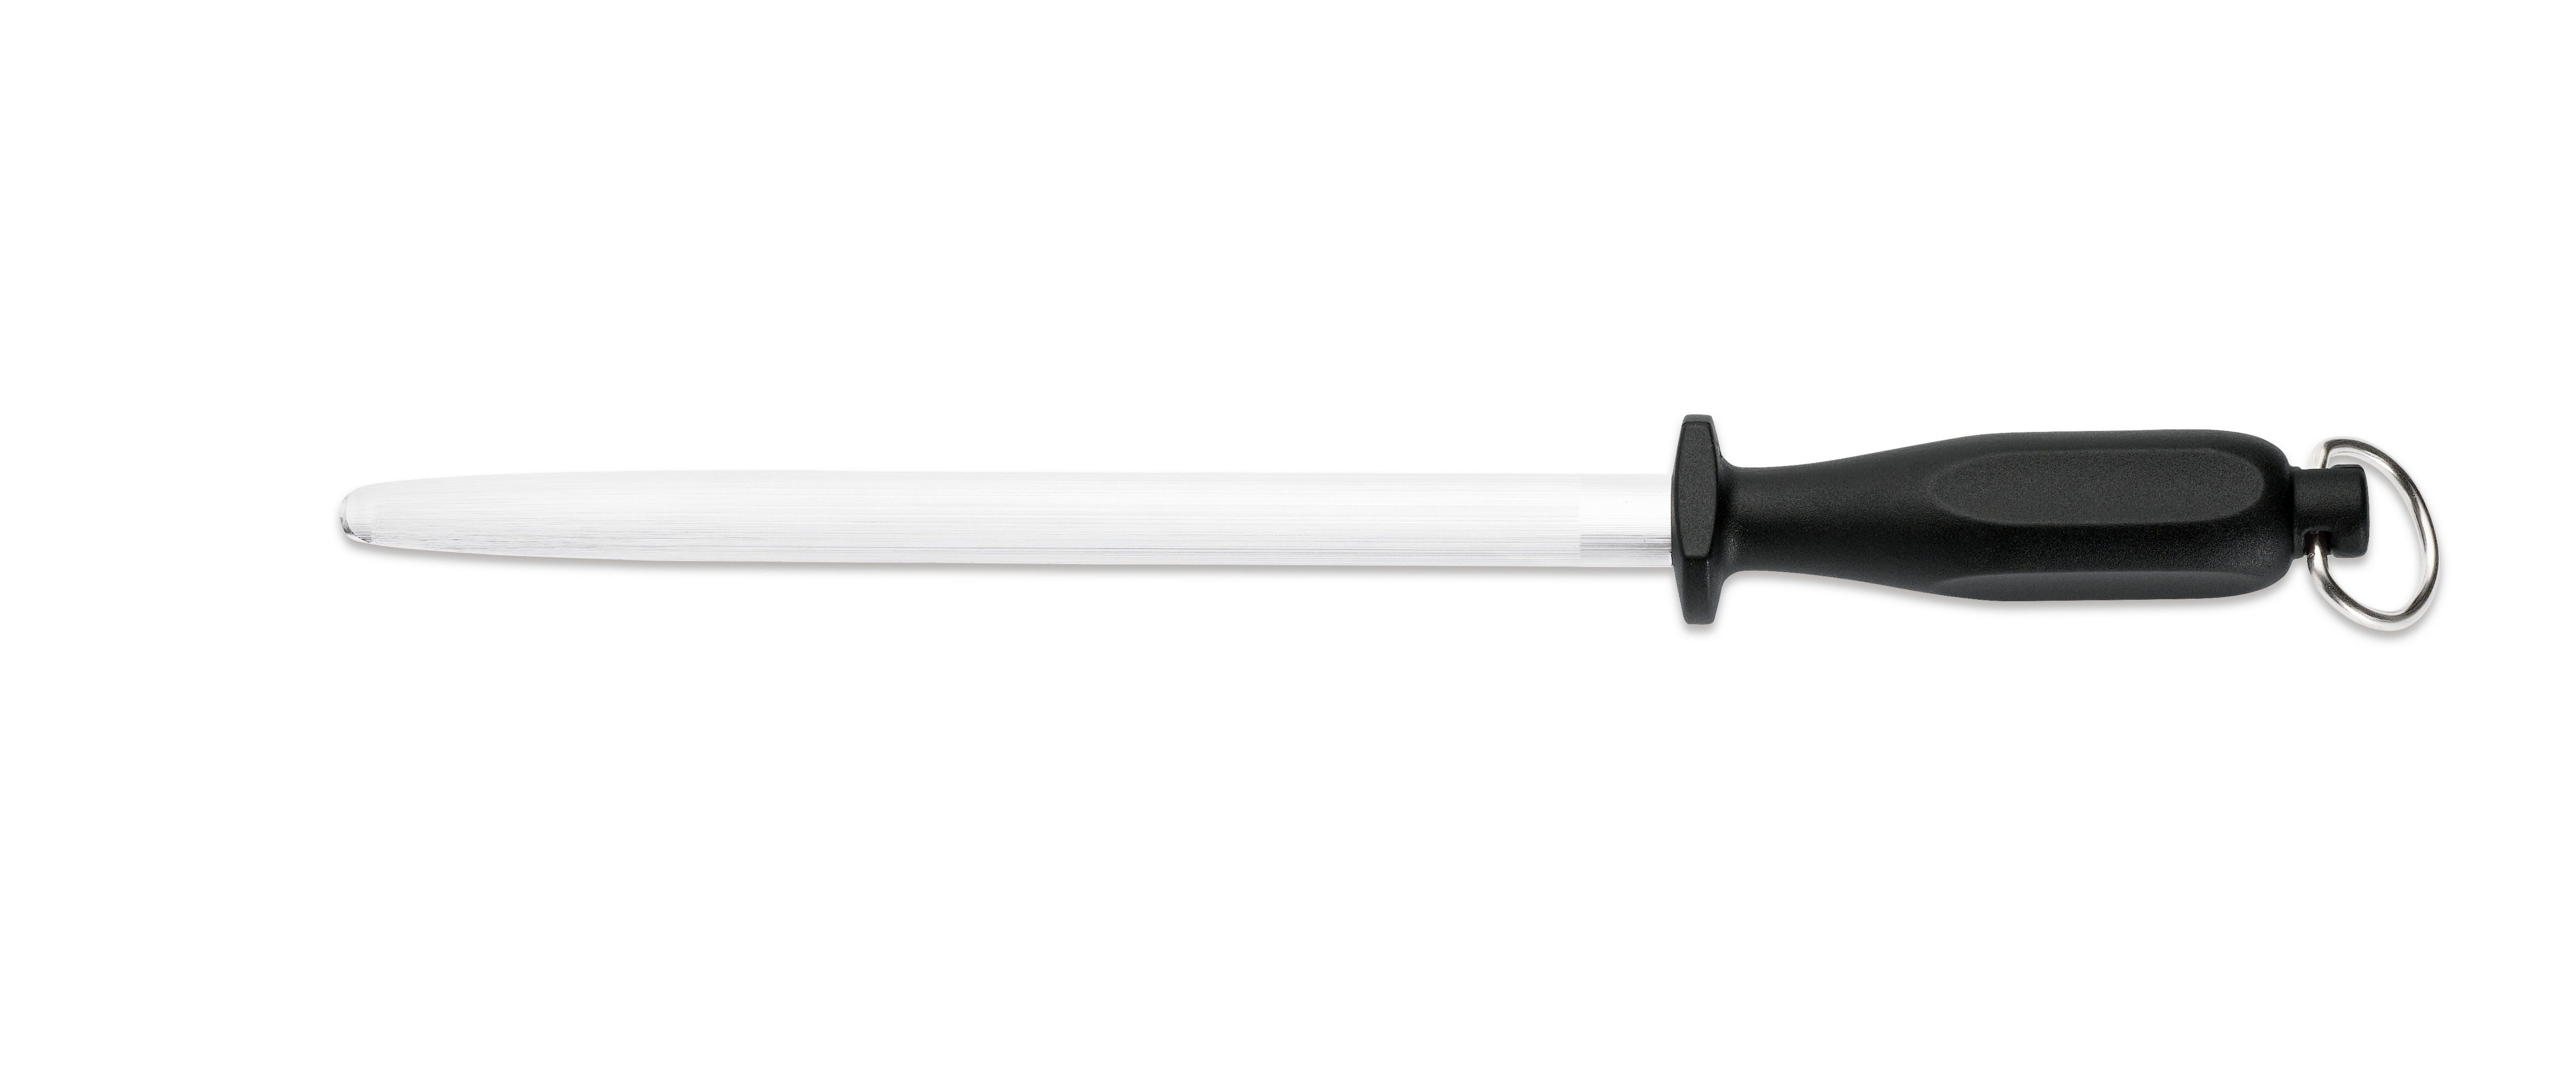 Giesser Messer Messerschärfer Abziehstahl Form oval 25, 31 cm, Mittelfeiner Zug - Verzahnung 6-7 Züge pro mm